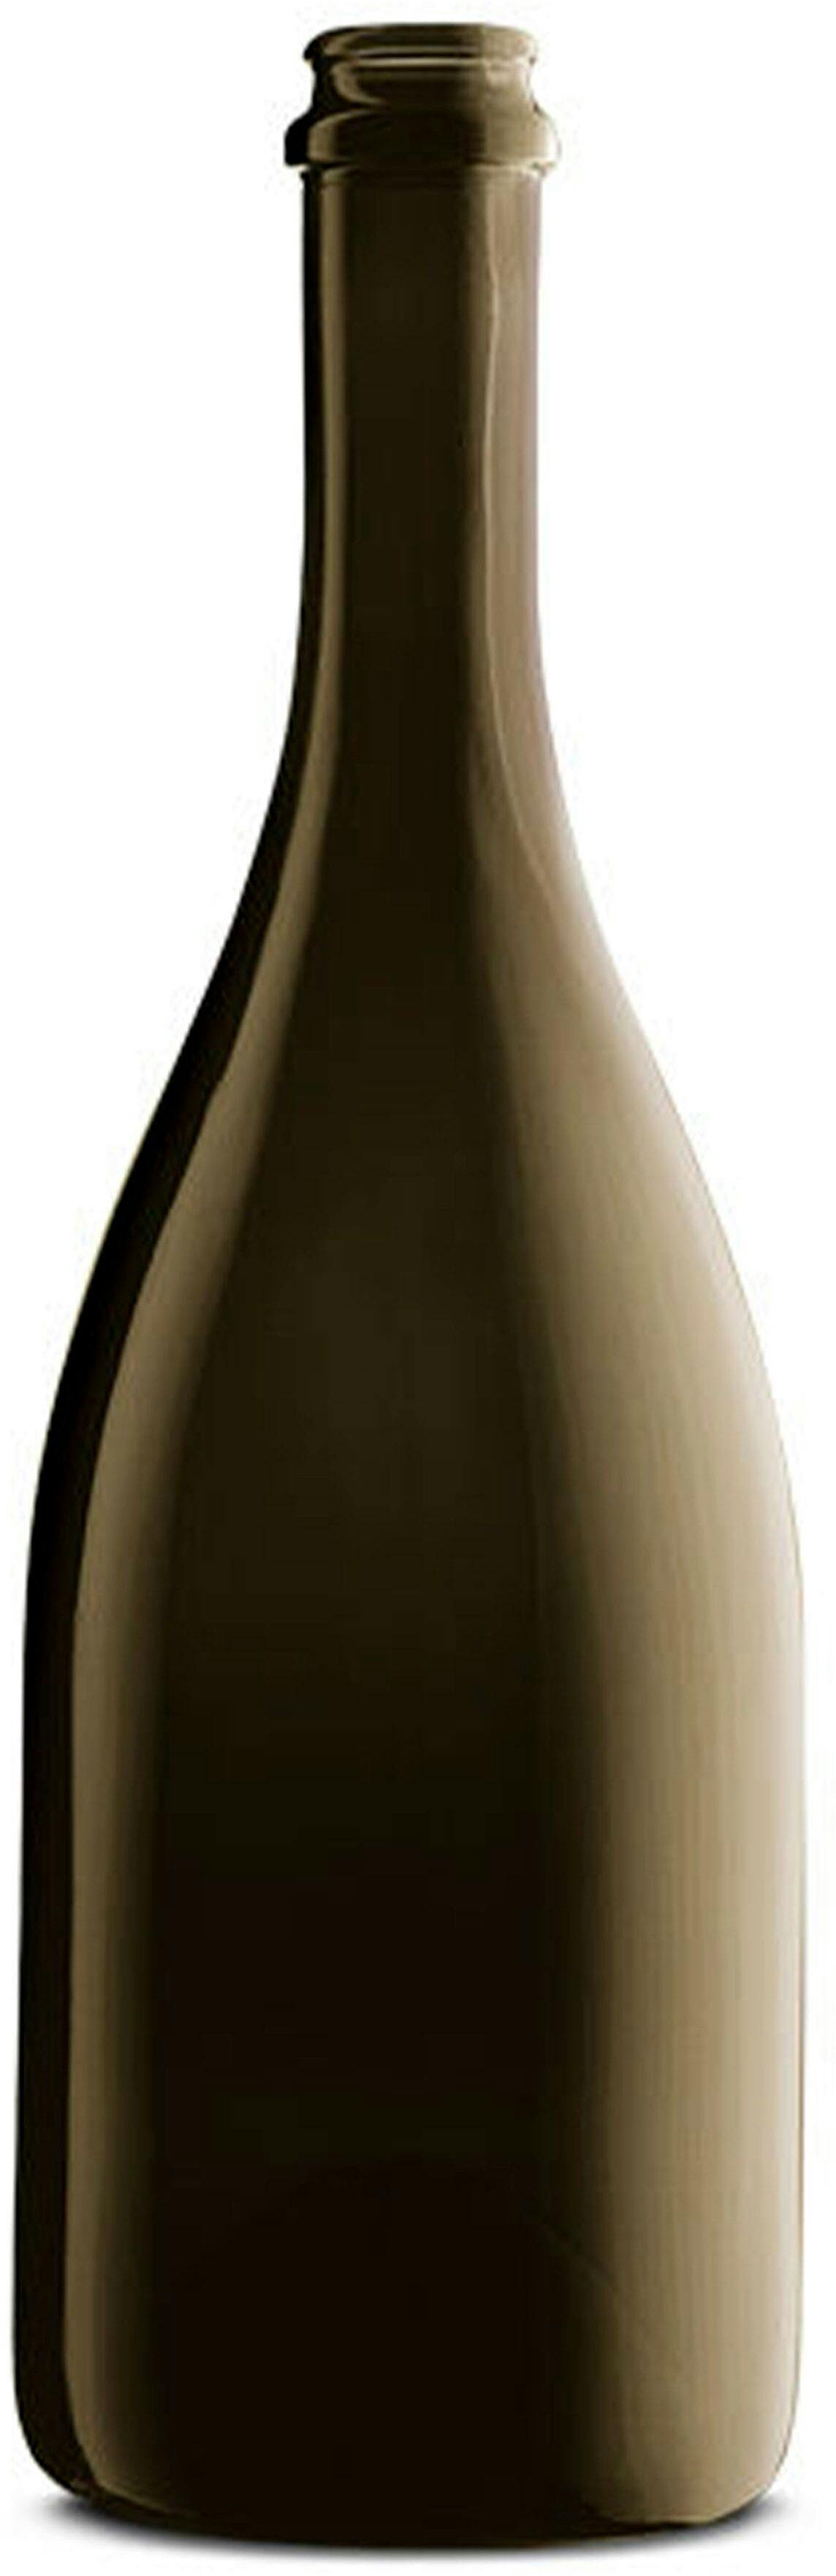 Bottiglia SPUM MONTEROSSA 750 ml BG-Sughero